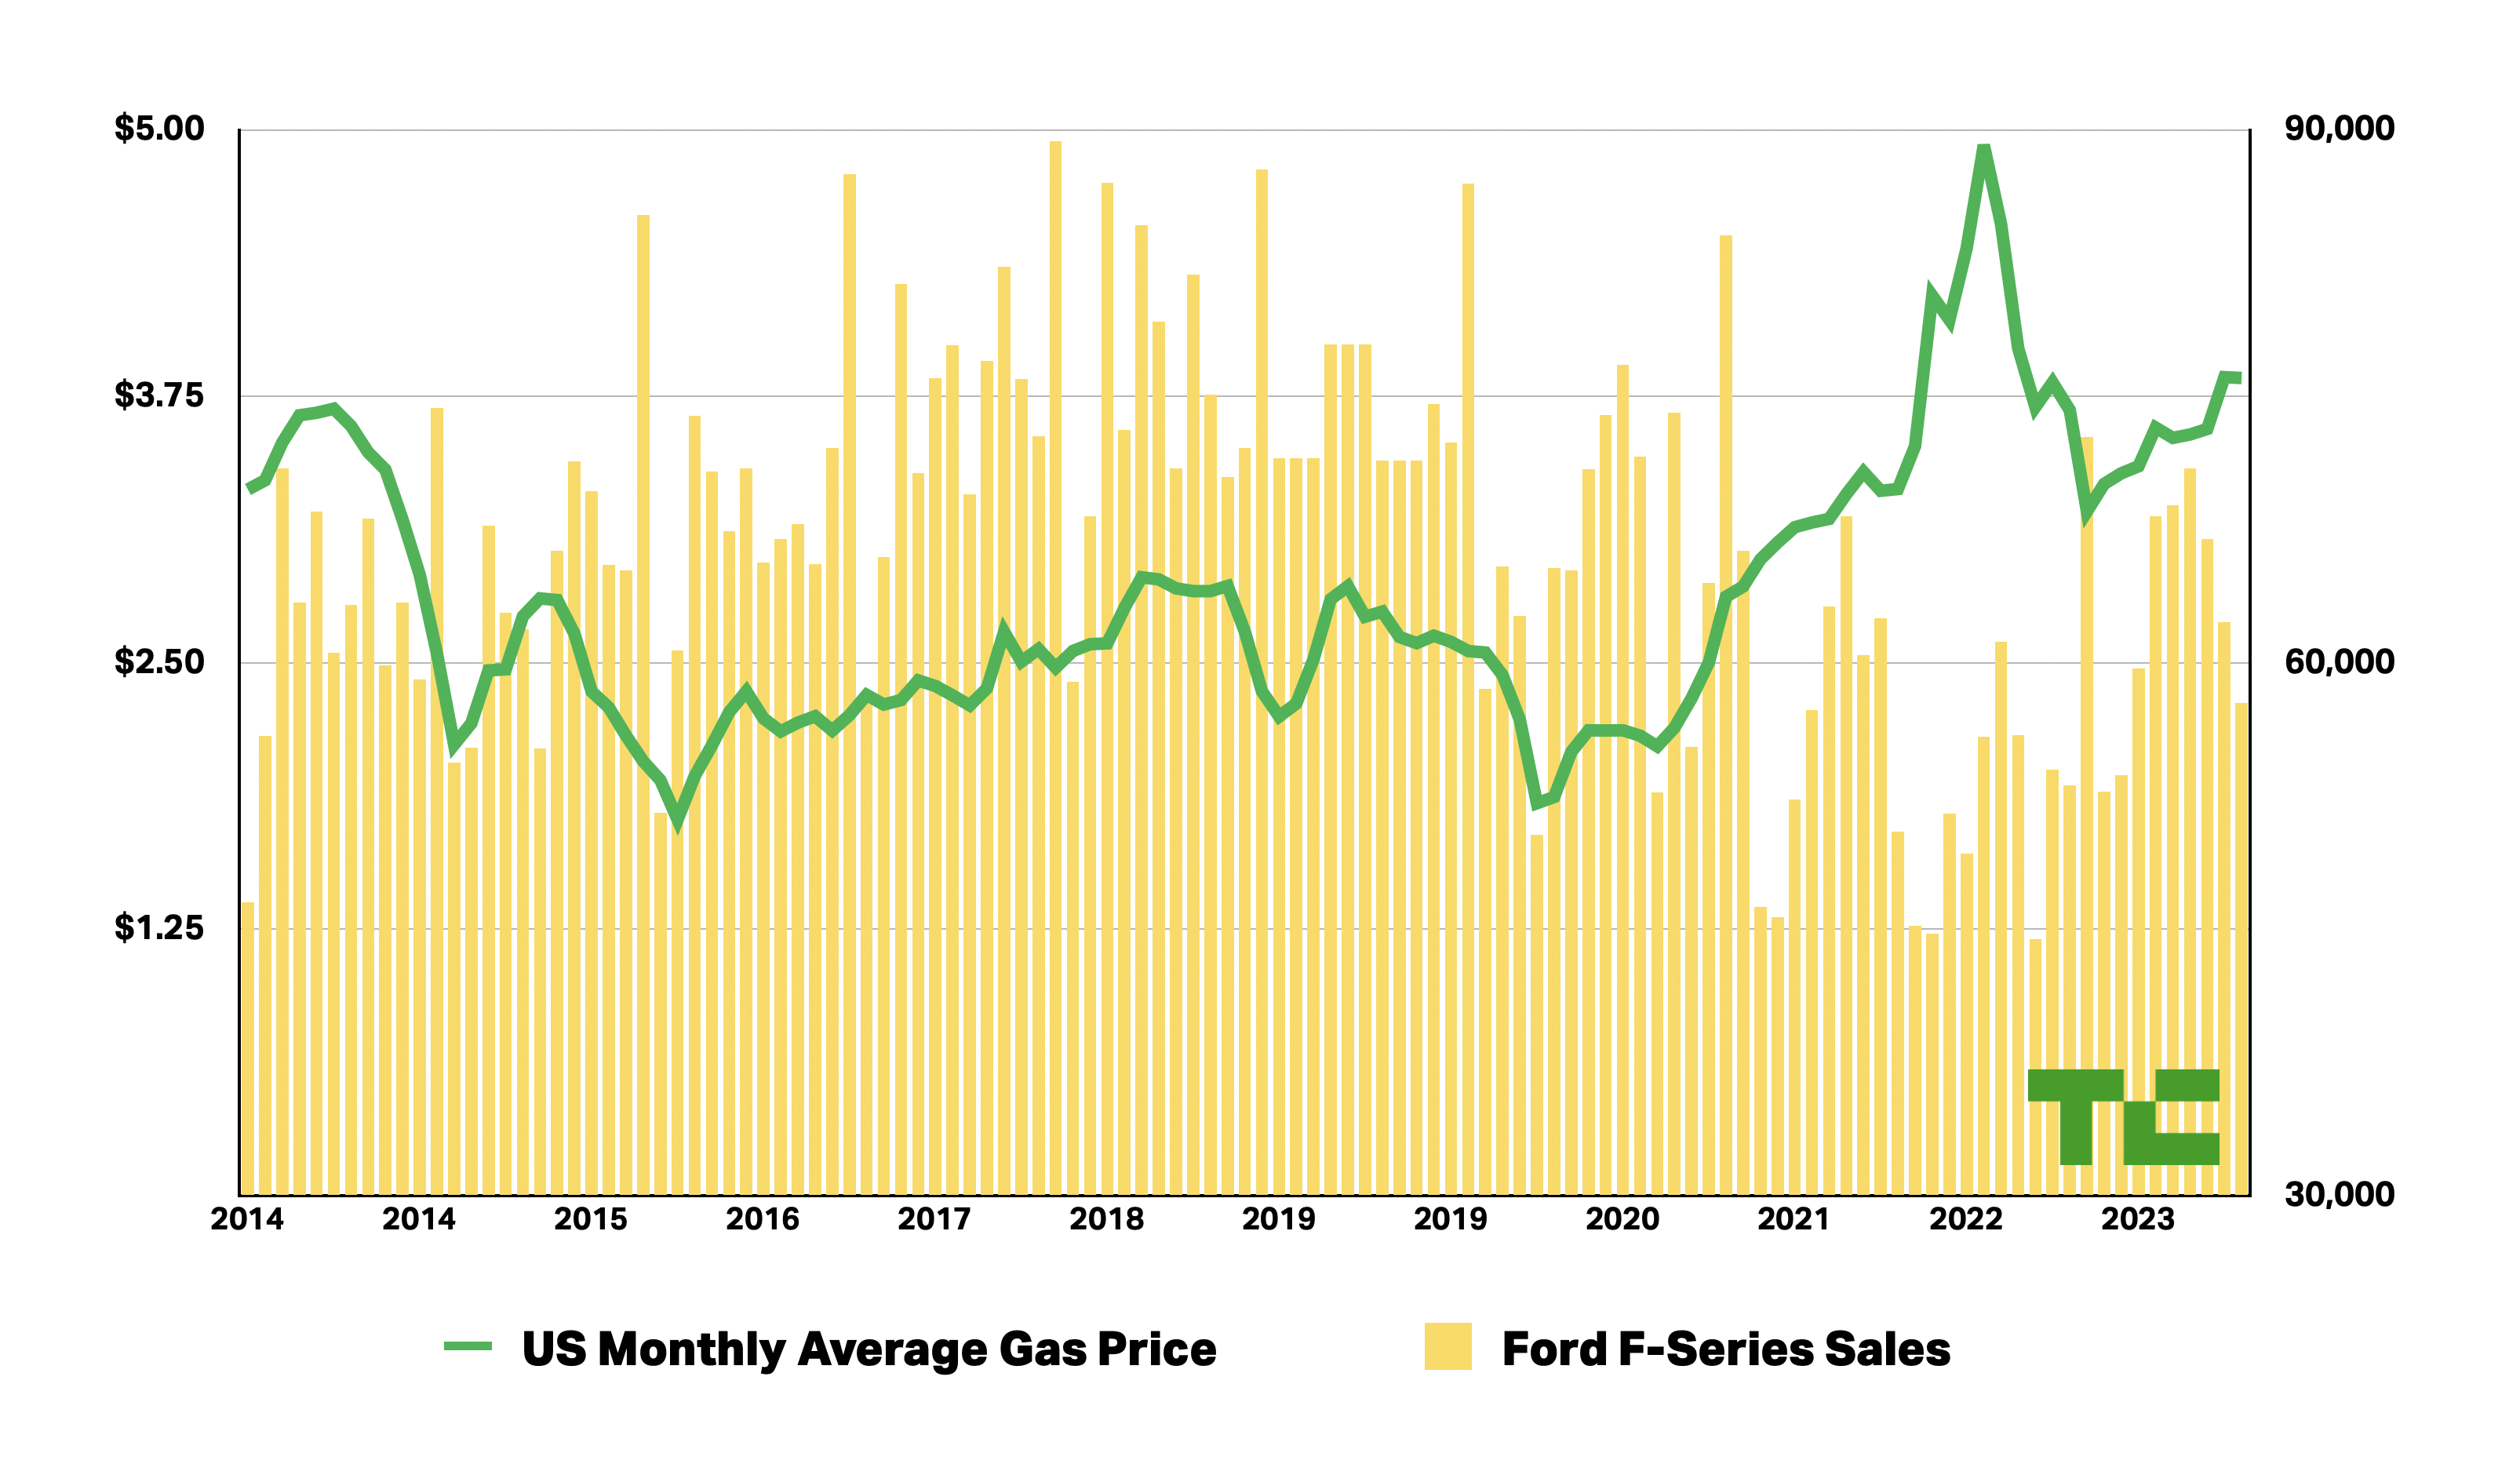 Die Verkäufe der Ford F-Serie werden im Vergleich zu den Benzinpreisen in den USA von 2014 bis 2023 dargestellt.